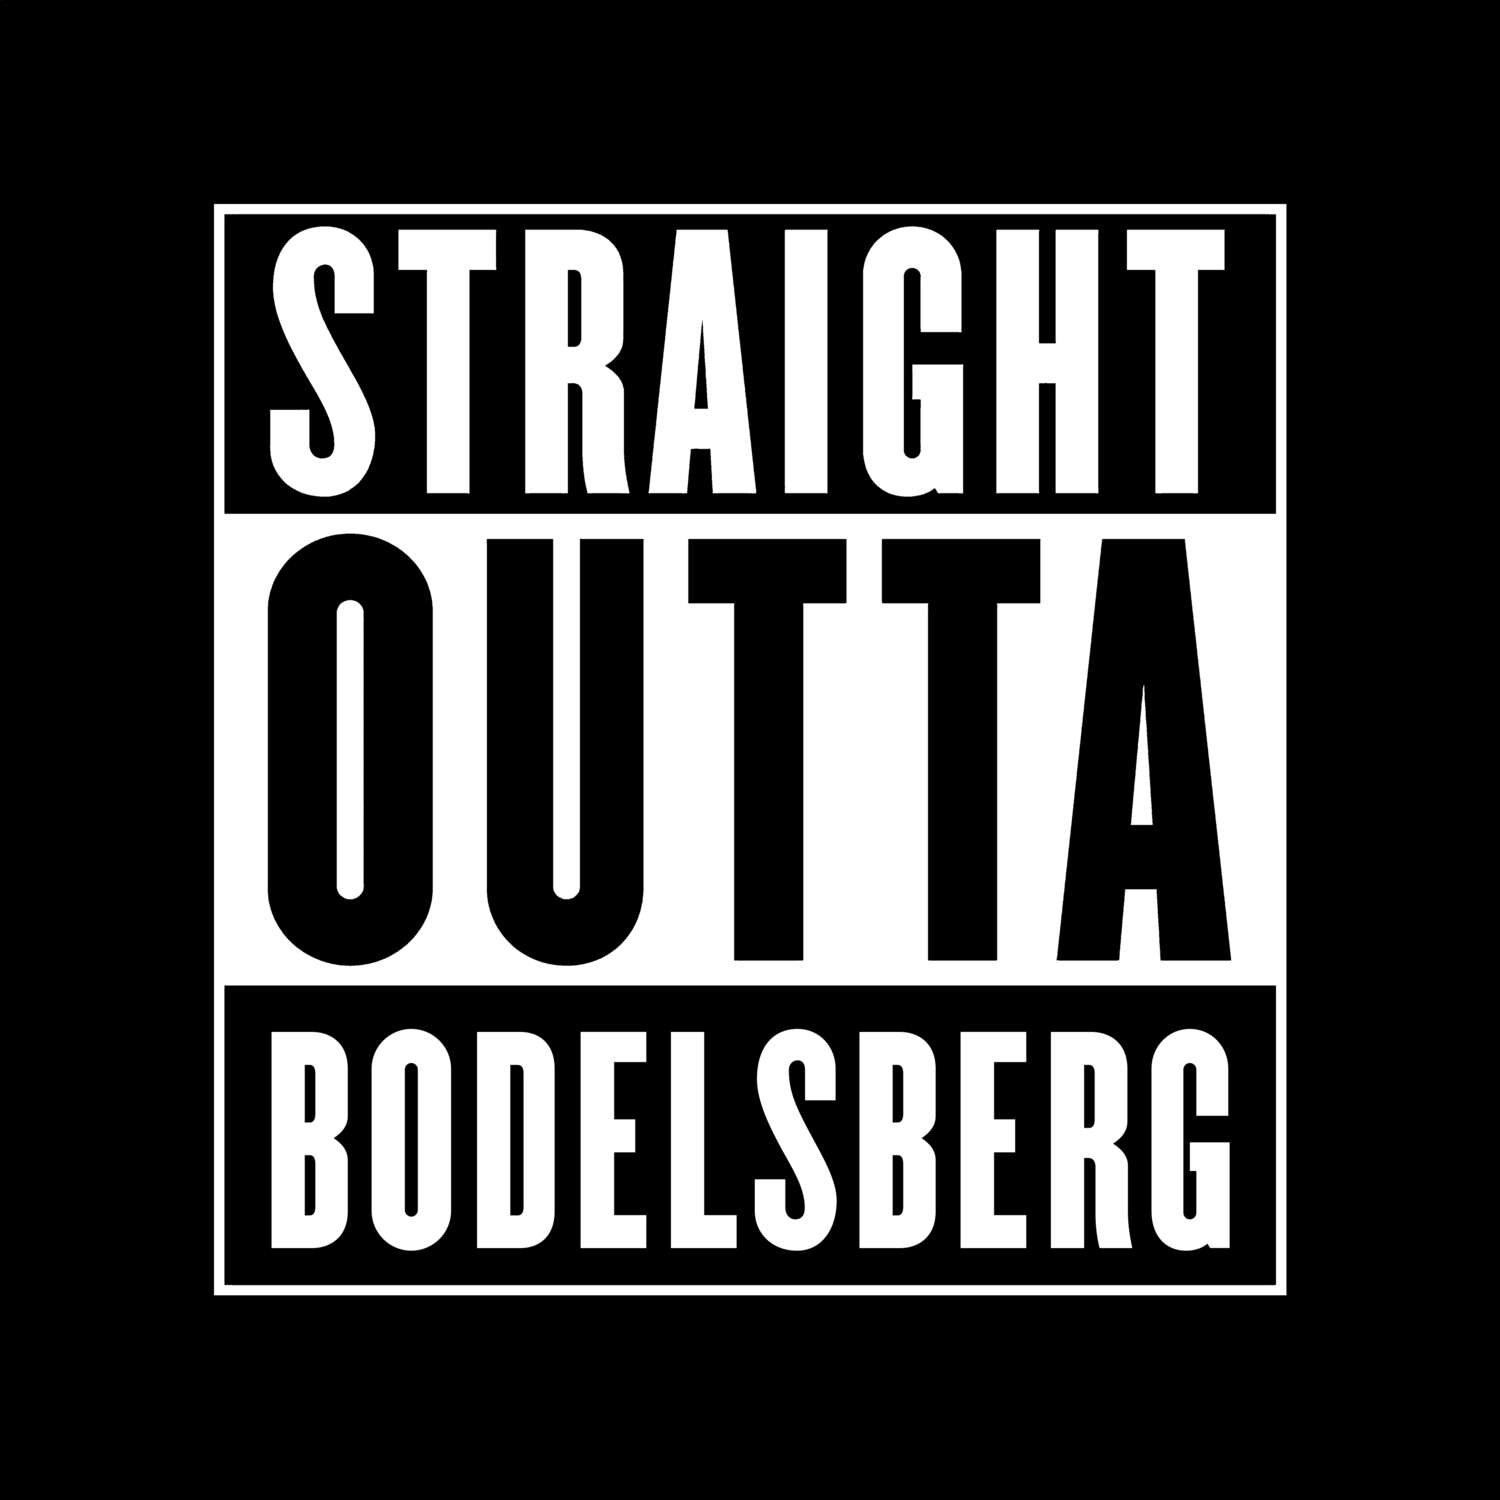 Bodelsberg T-Shirt »Straight Outta«